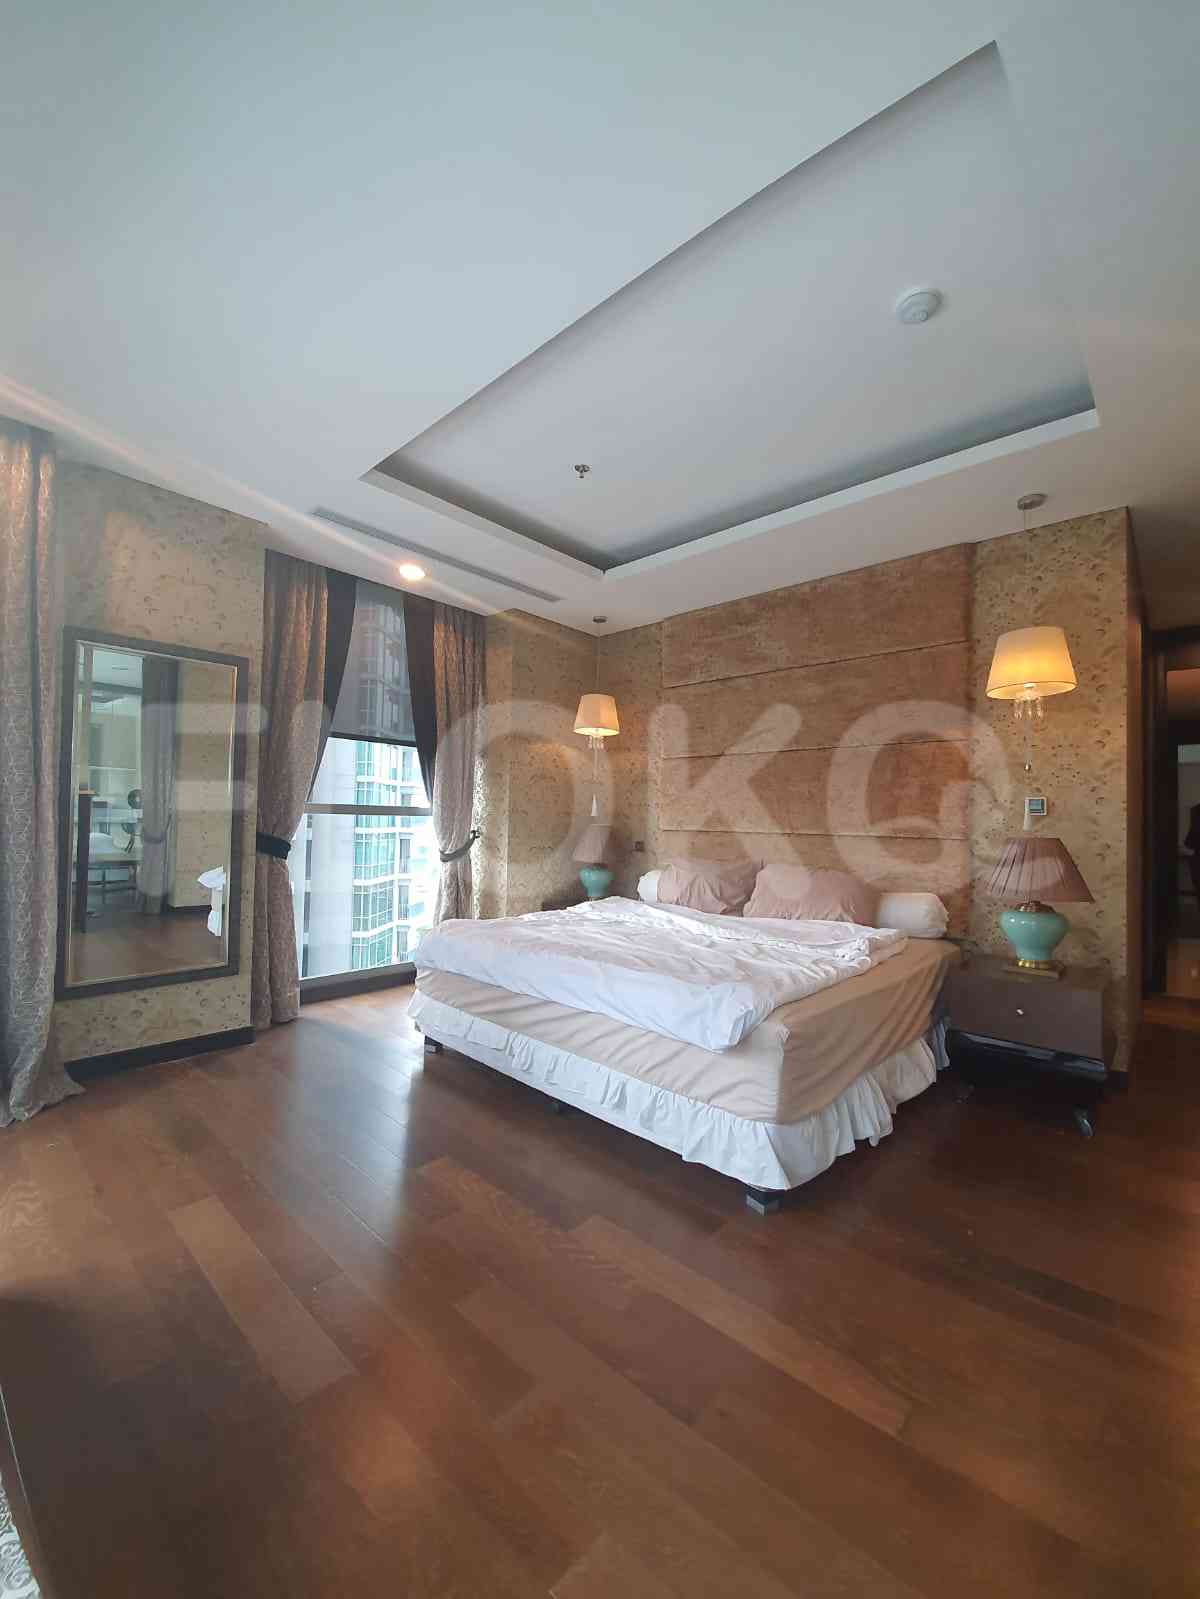 3 Bedroom on 15th Floor for Rent in Kemang Village Residence - fke5fe 6